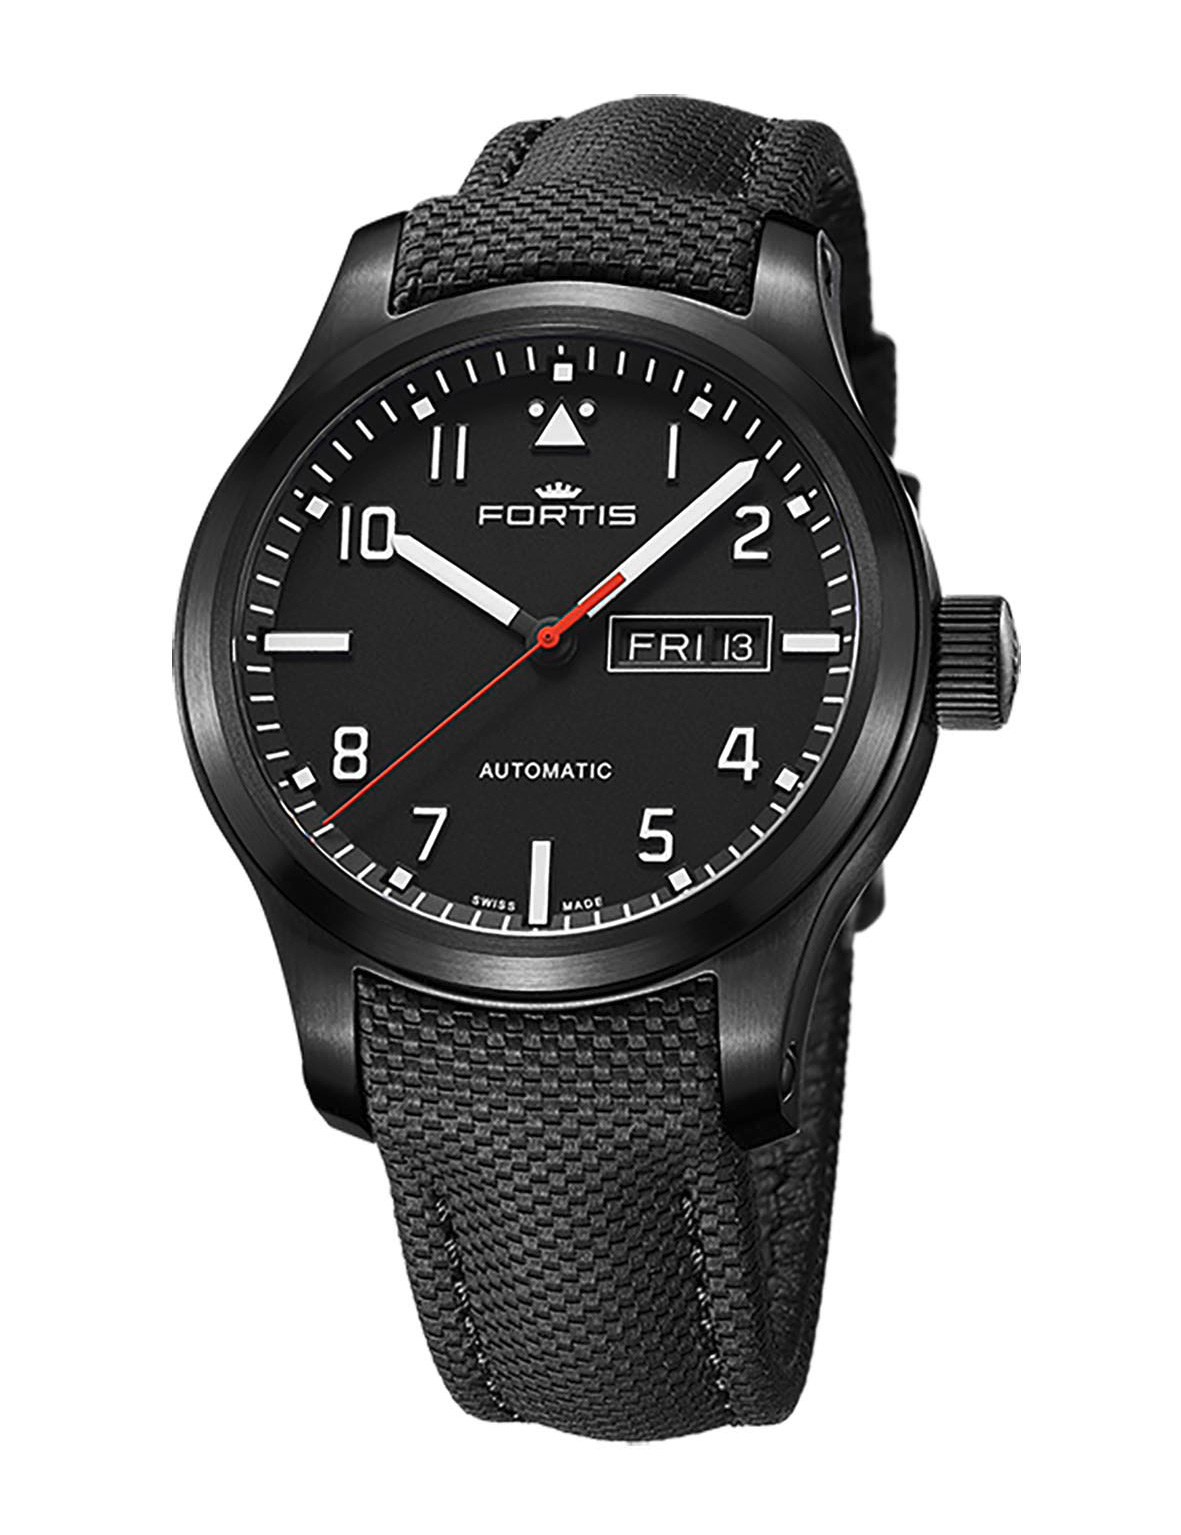 エアロマスタープロ デイデイトが生産終了 | スイス製腕時計 FORTIS 